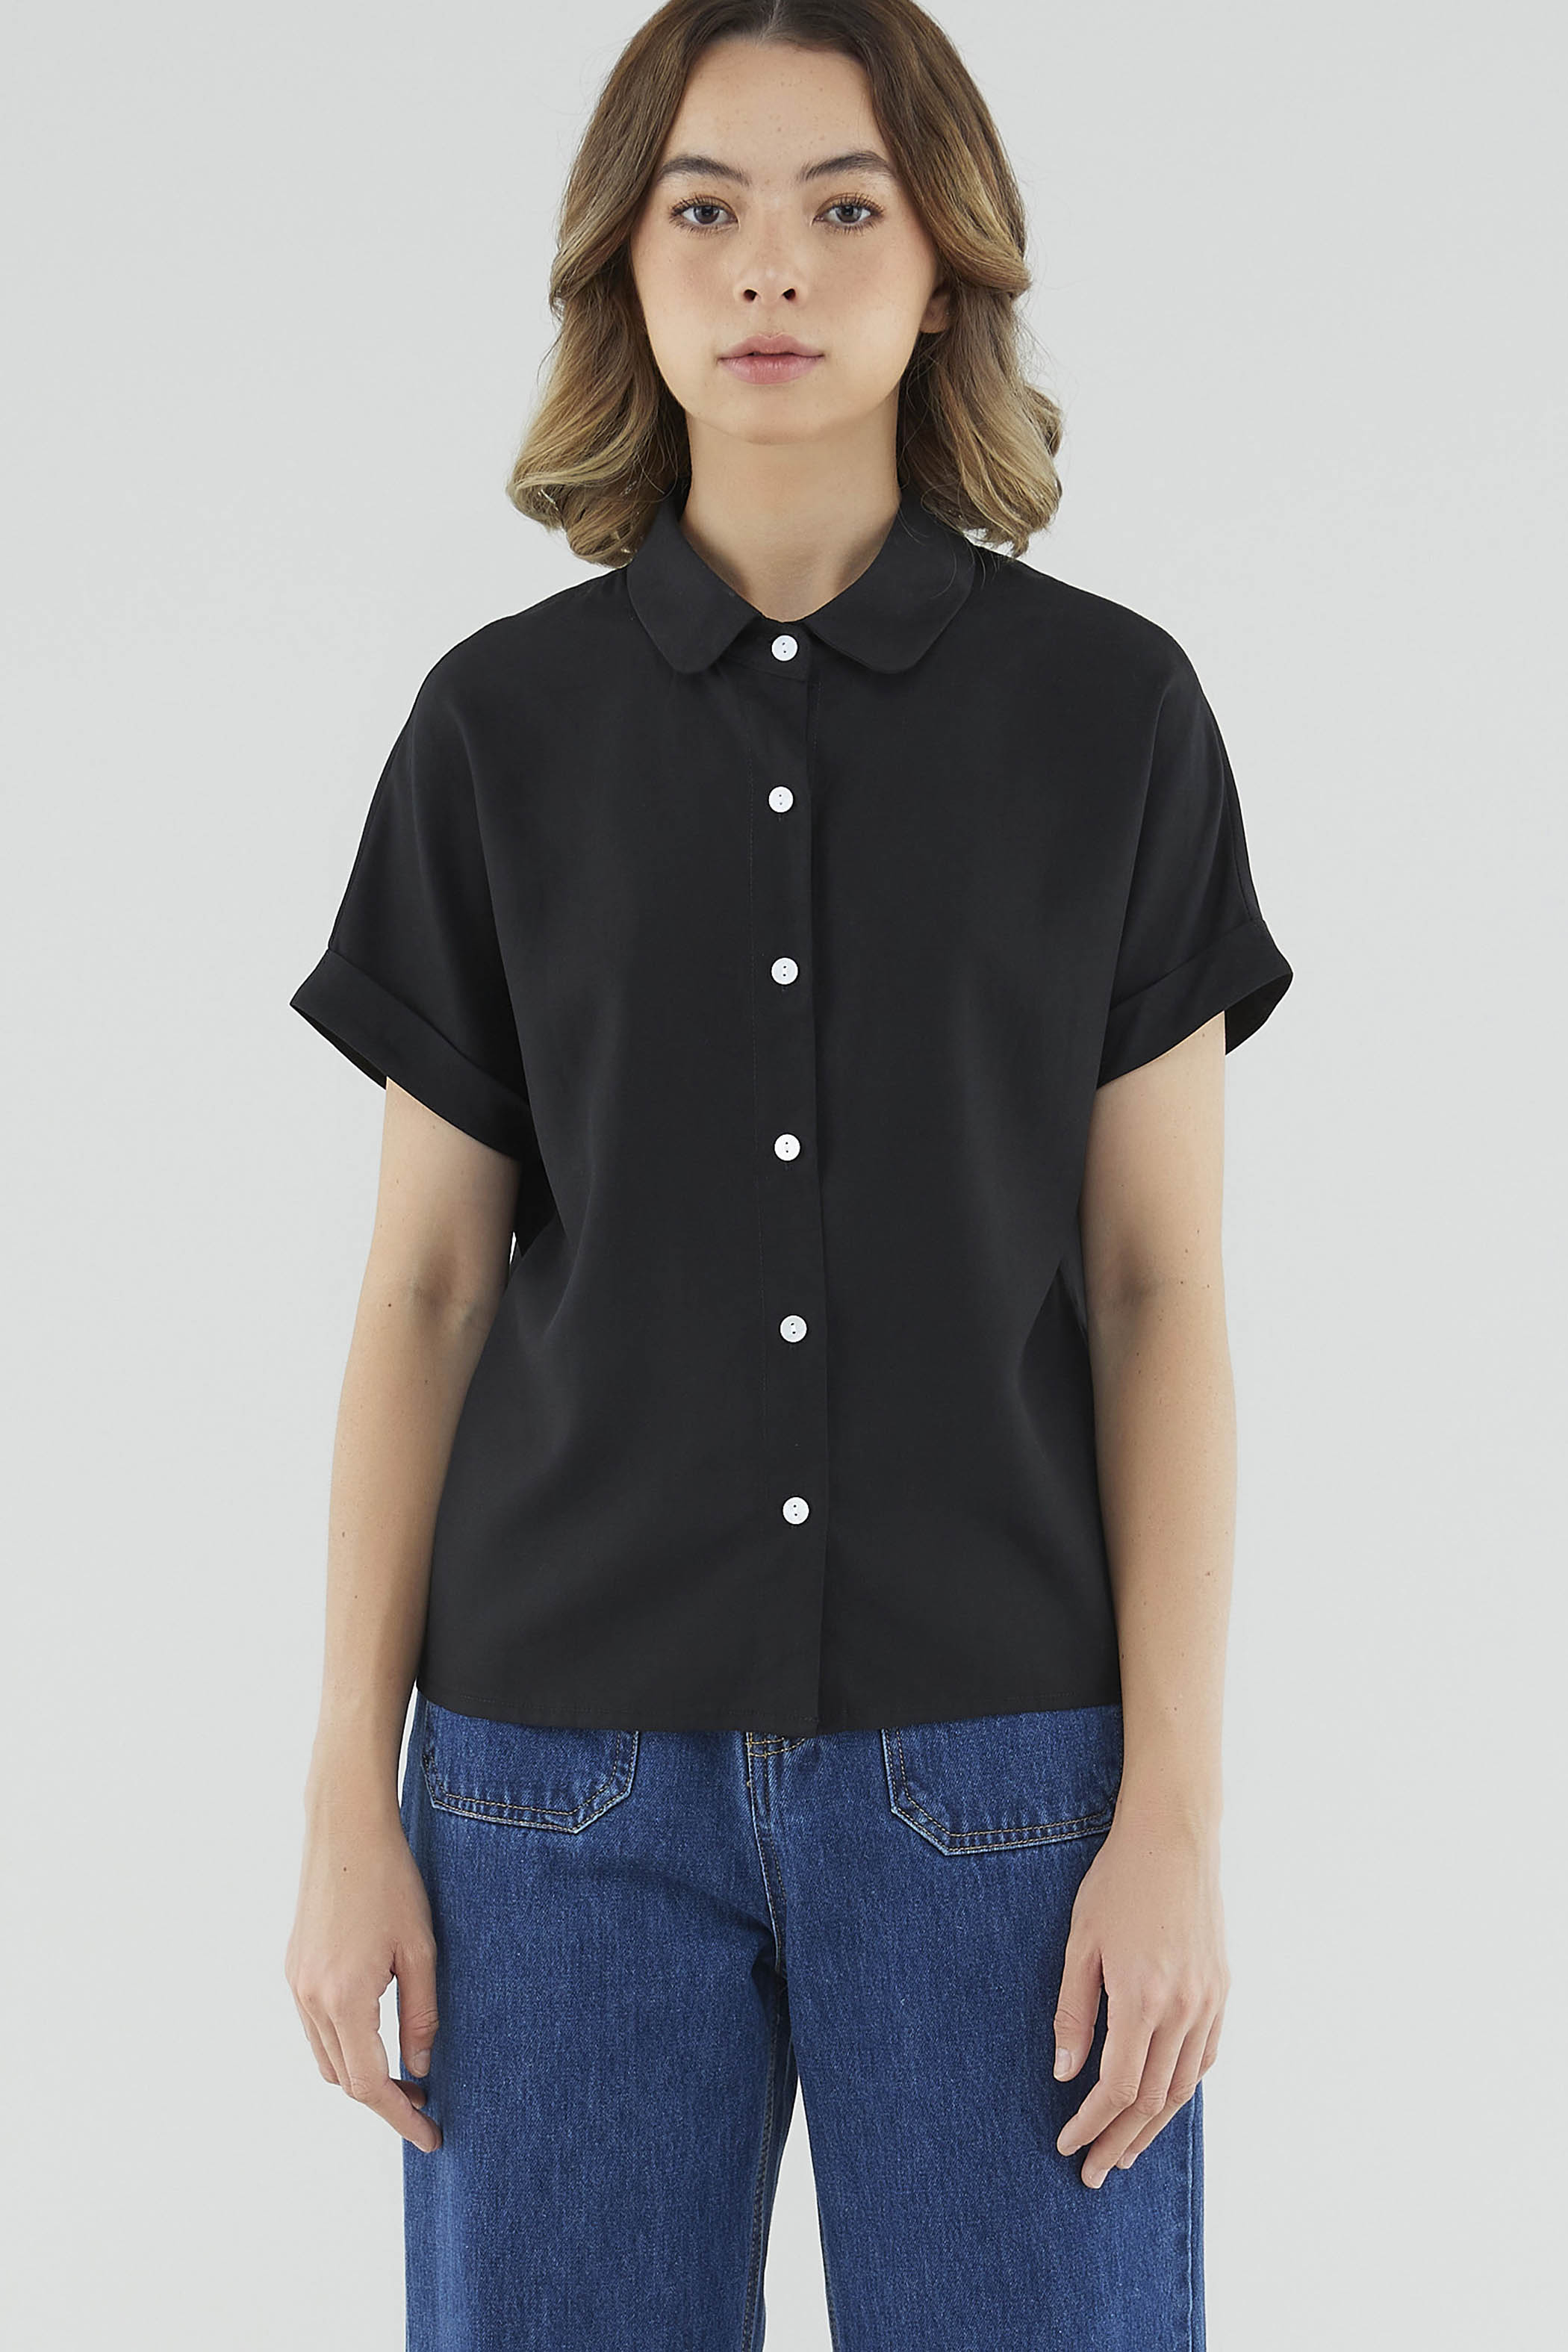 Marles Short-Sleeve Shirt